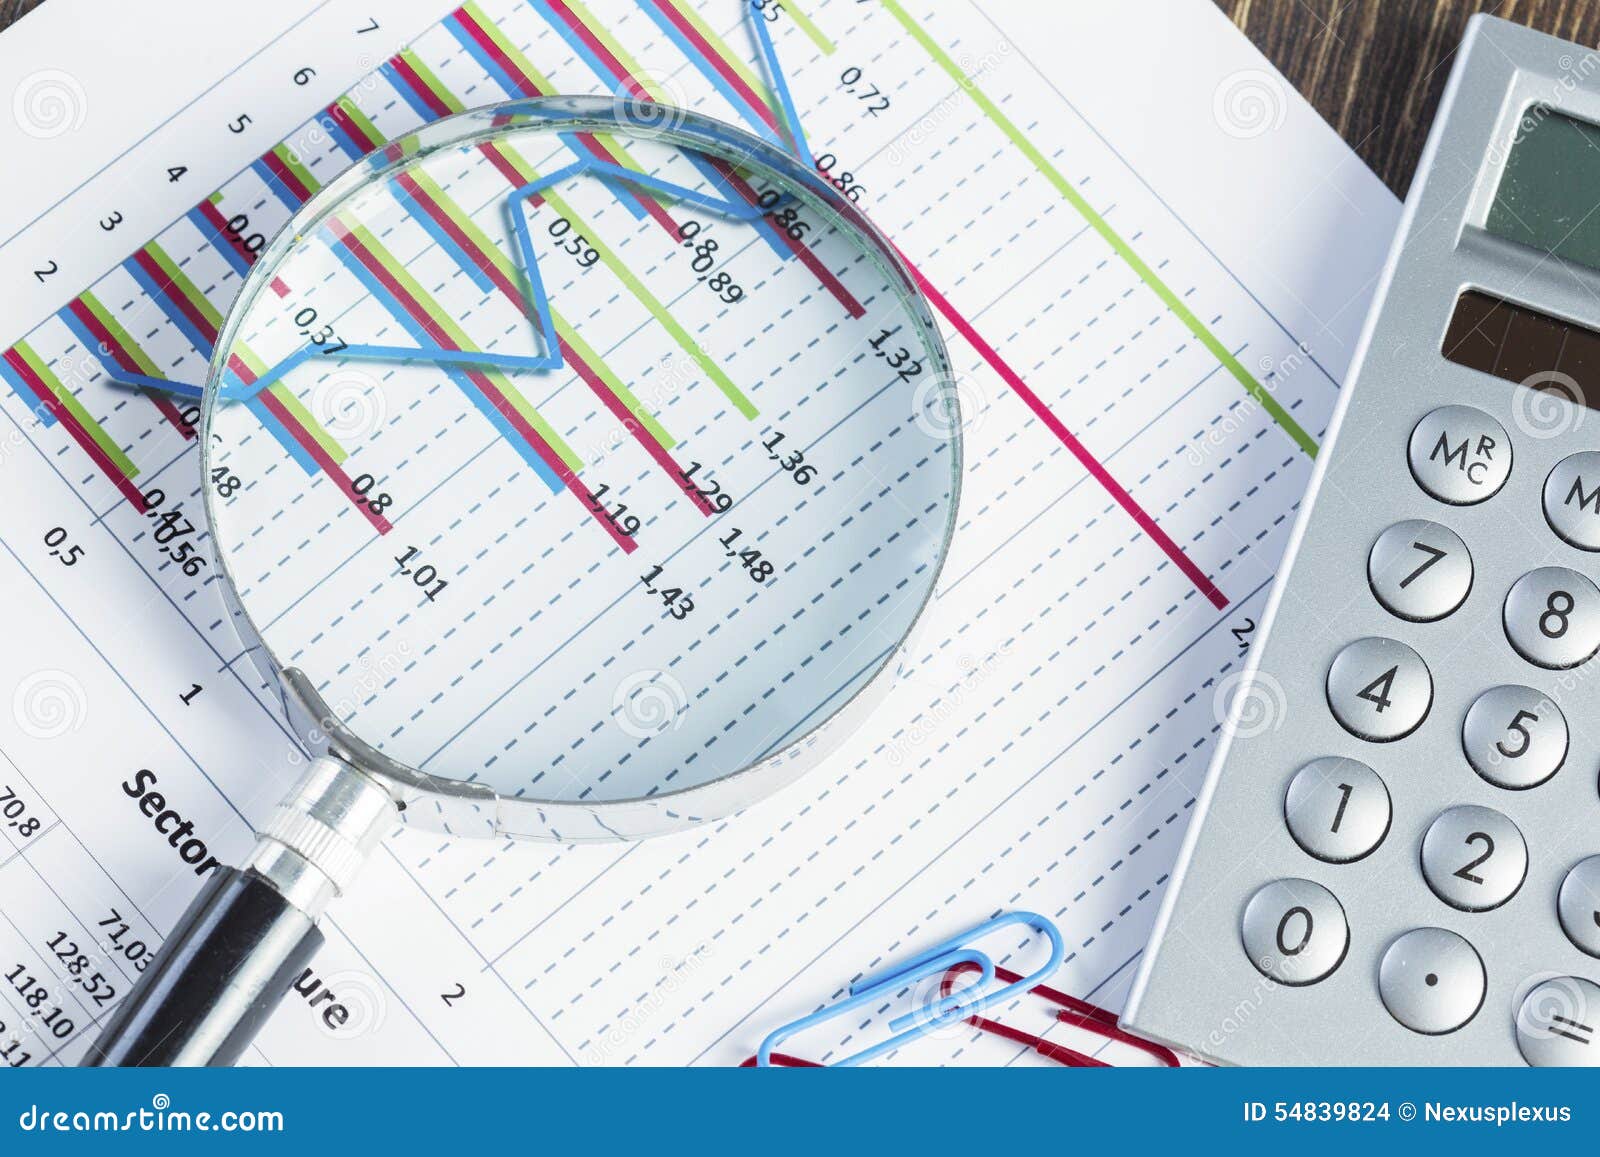 Financial analytics stock photo. Image of company, chart - 54839824